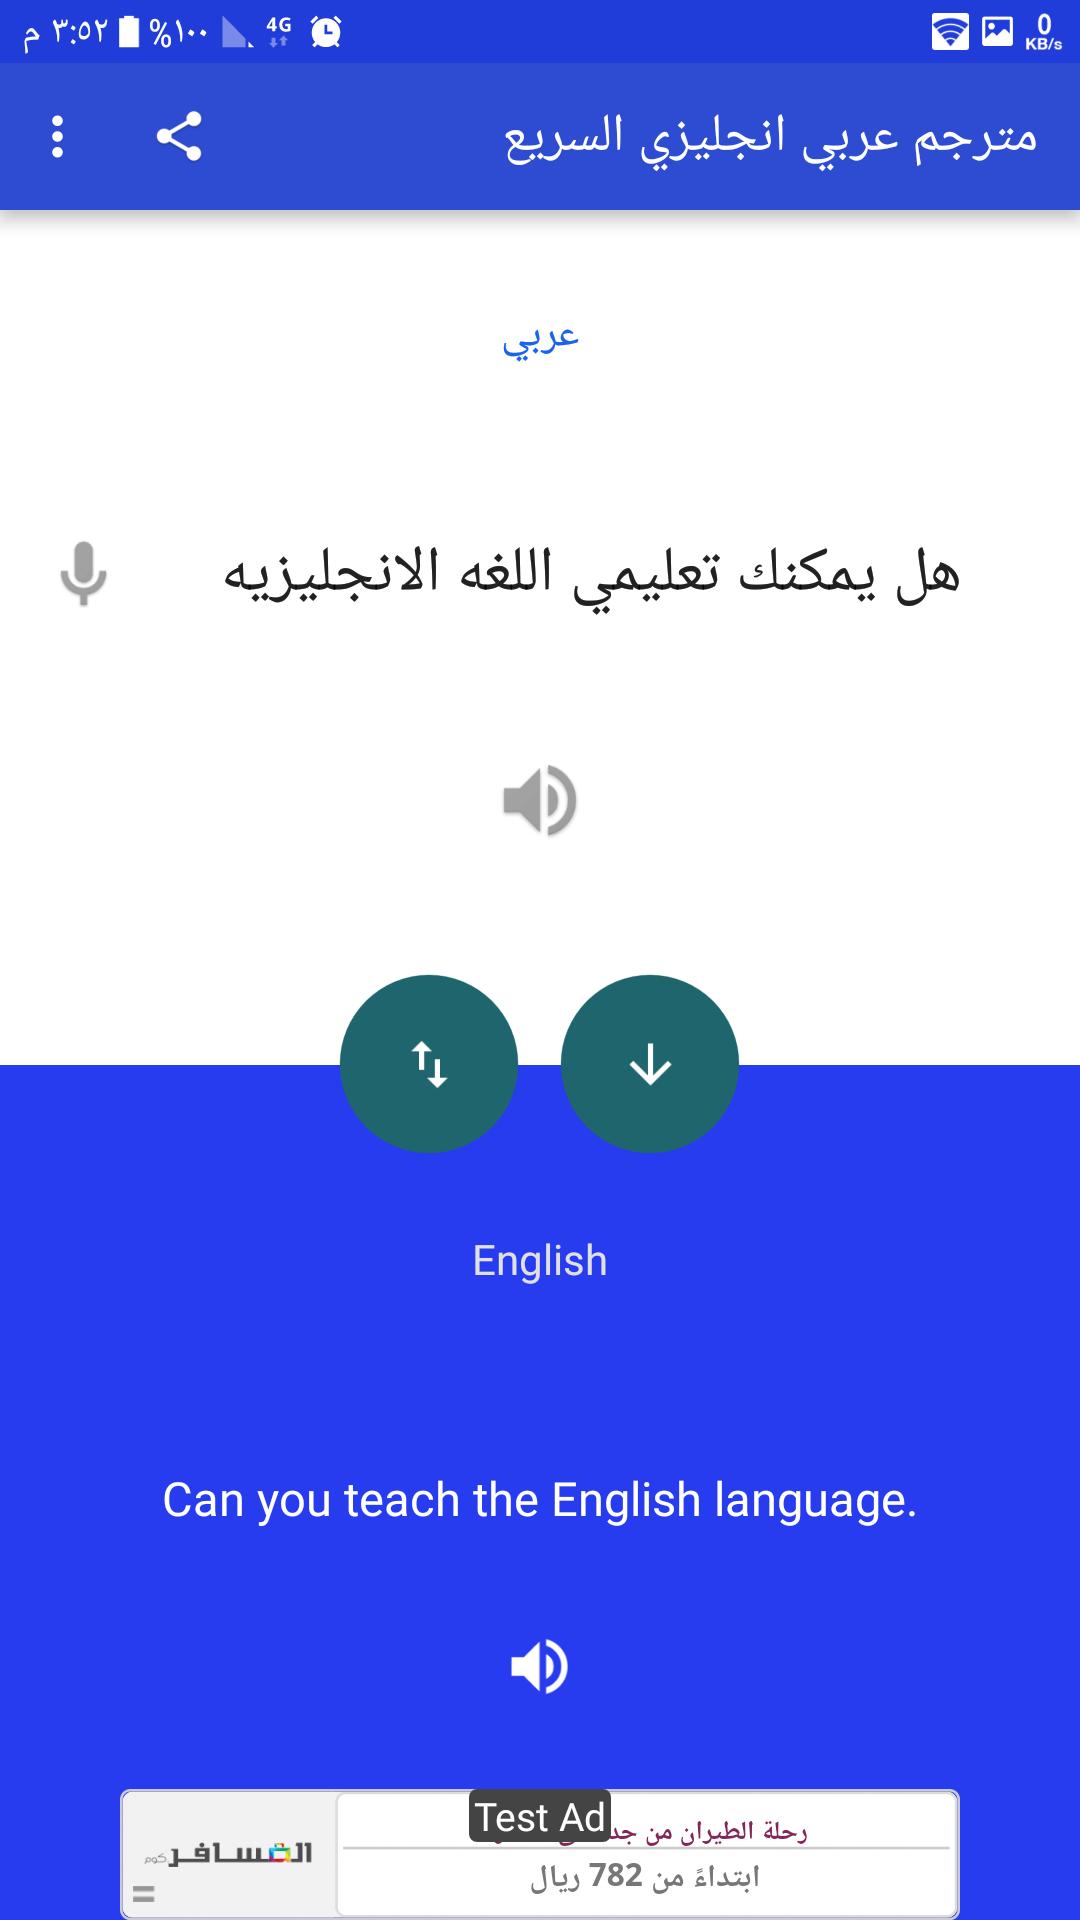 منتجع خط الاستواء تنظم ترجمة كلمات من اللغة الانجليزية الى العربية -  mindyourheadapp.com